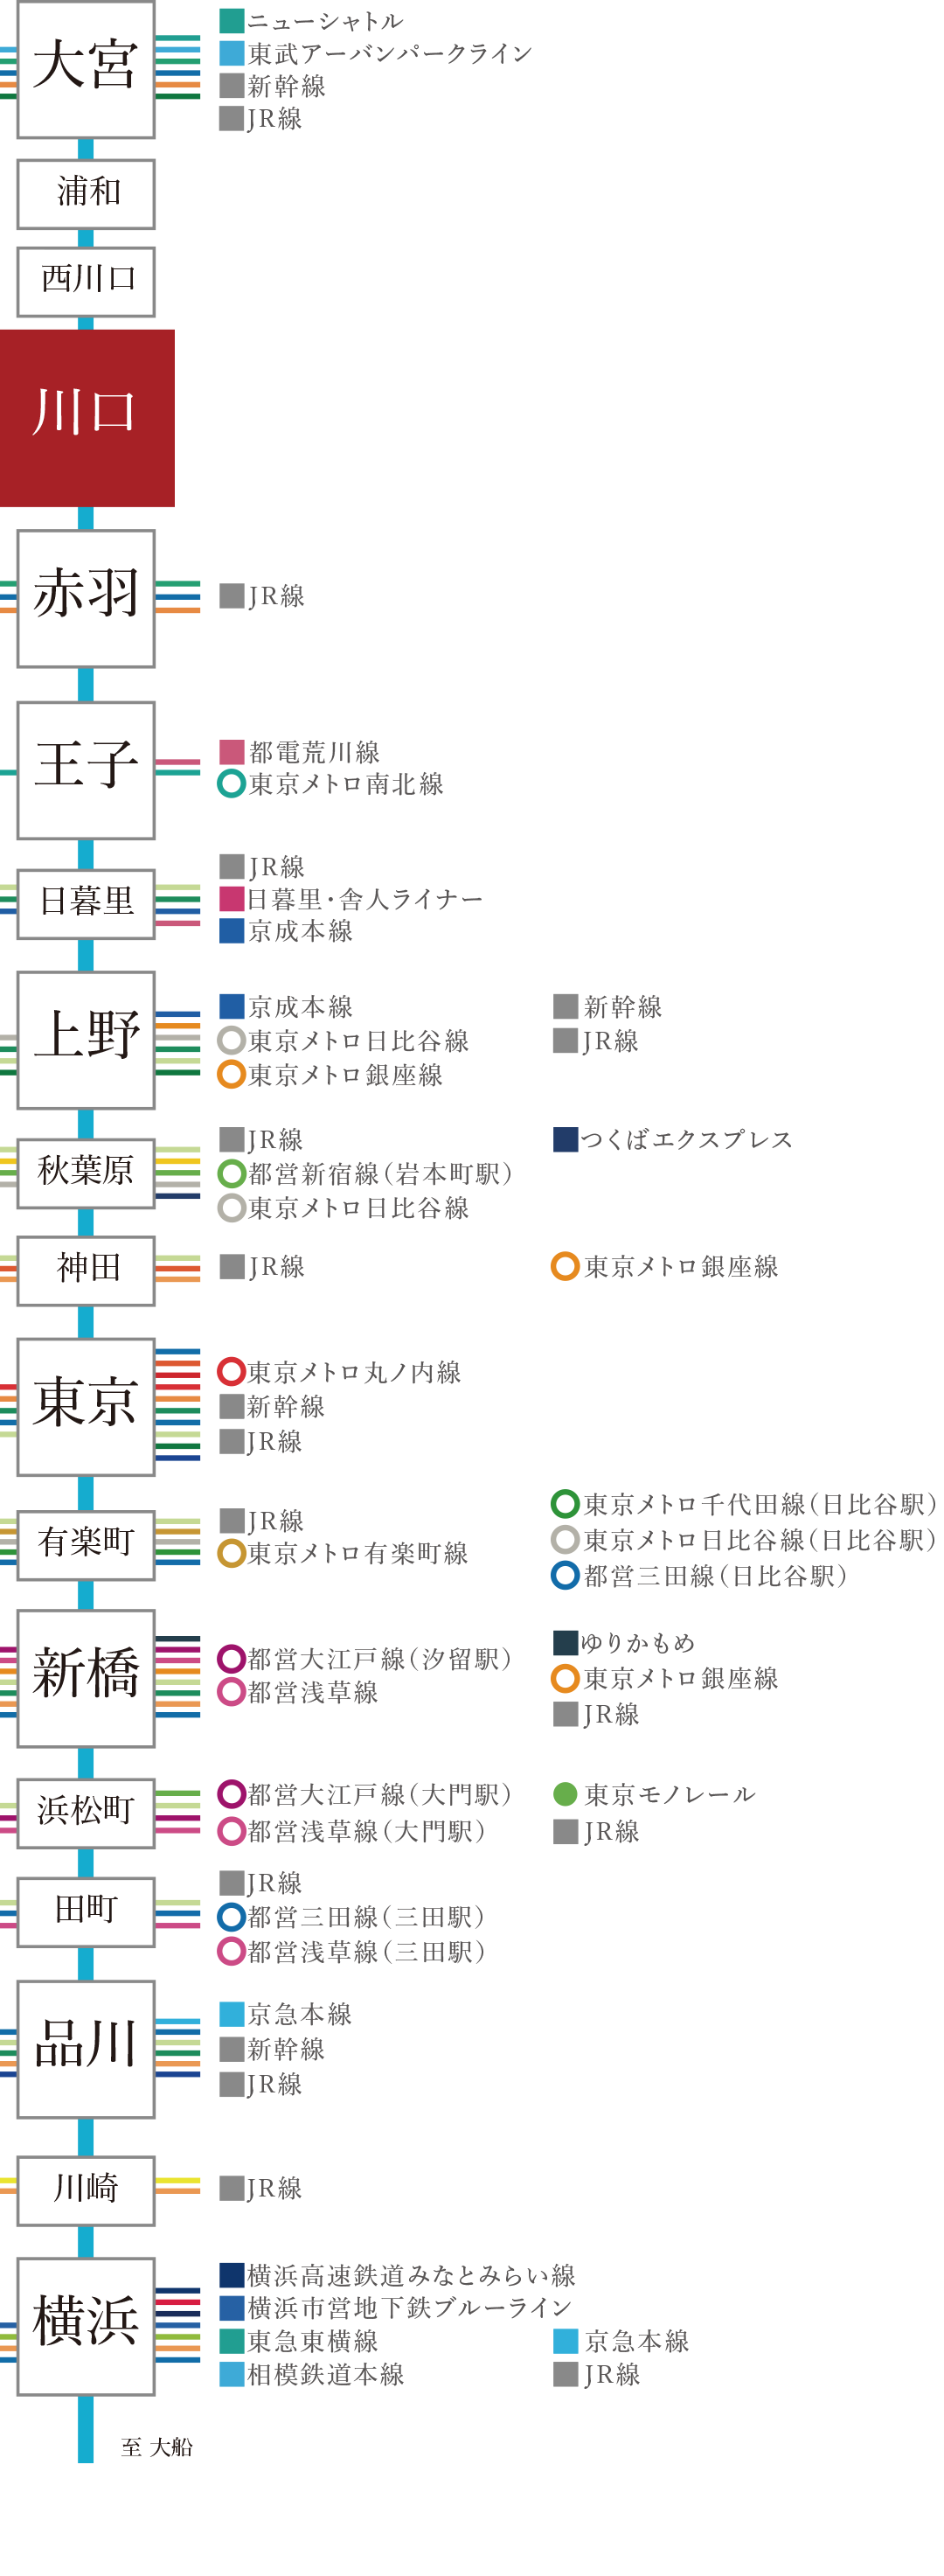 JR京浜東北線 路線図